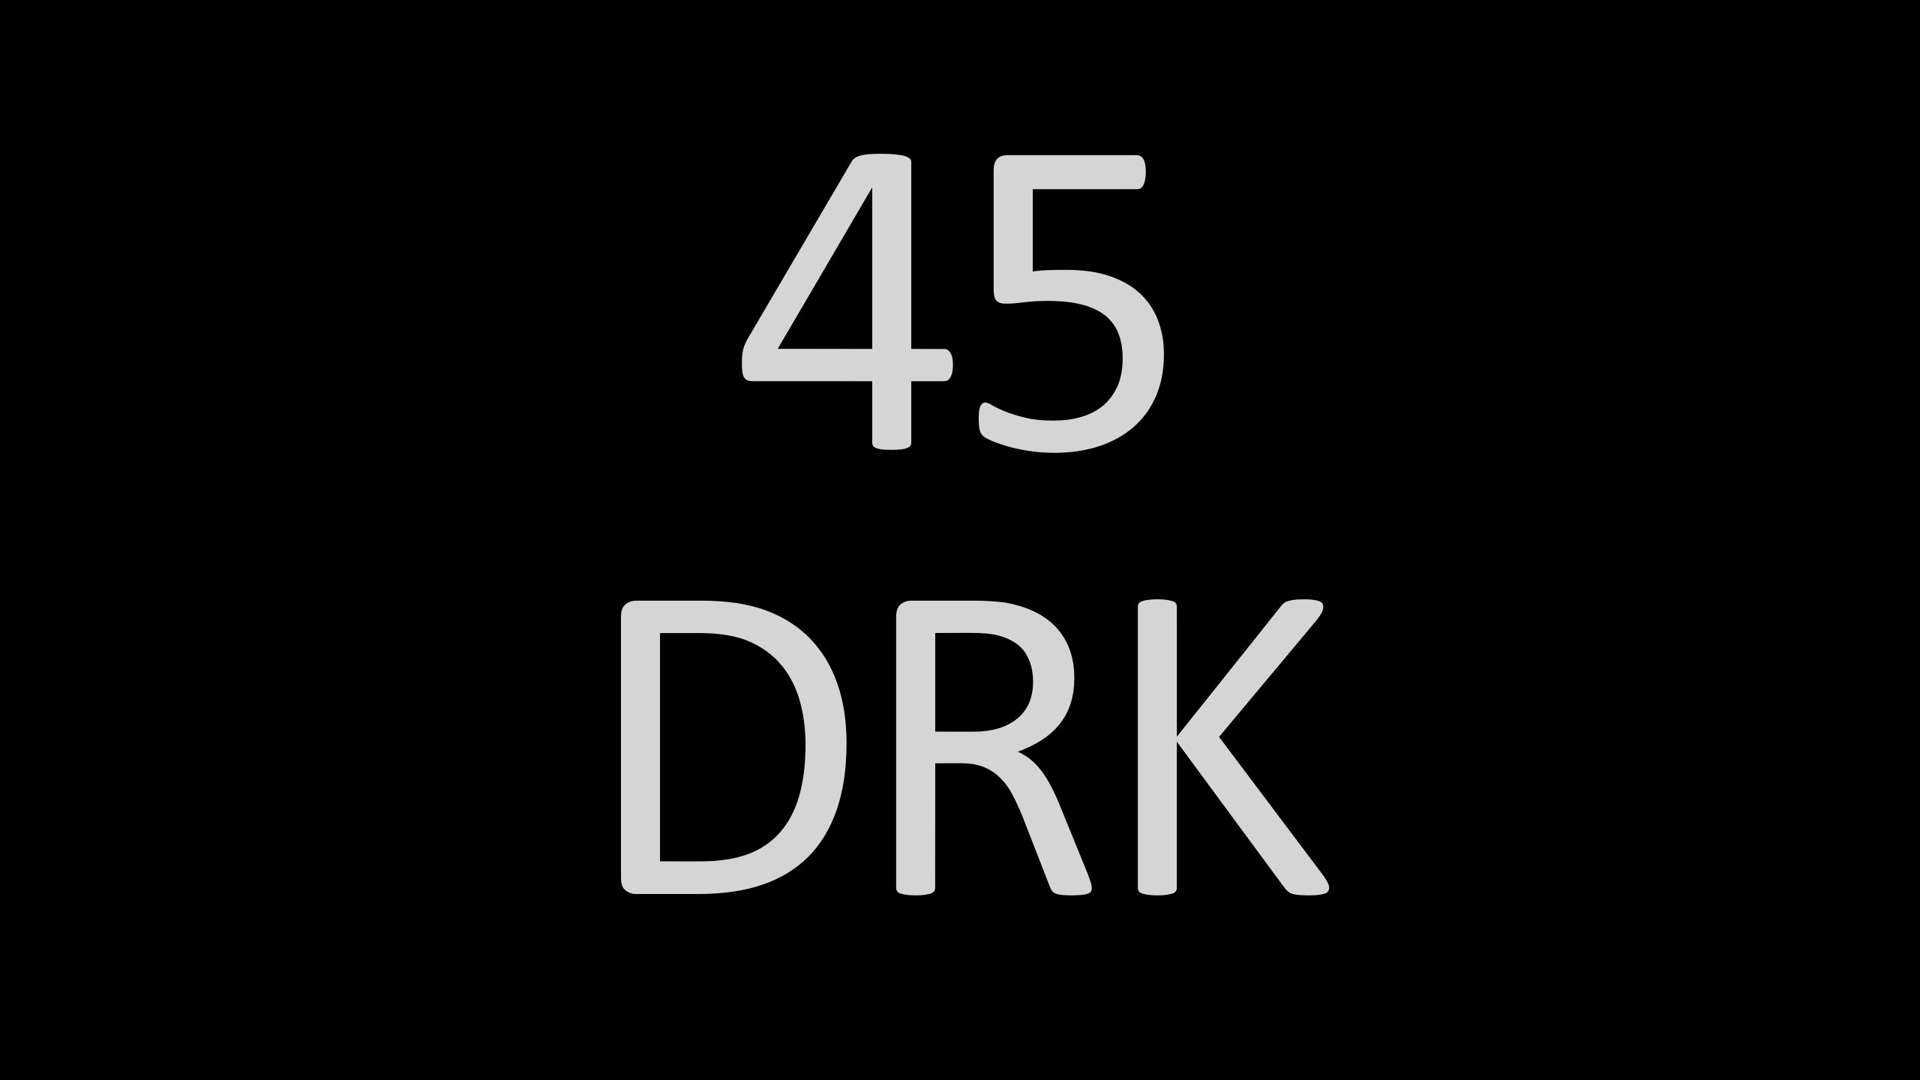 <p>45 DRK Registration number&nbsp;</p>